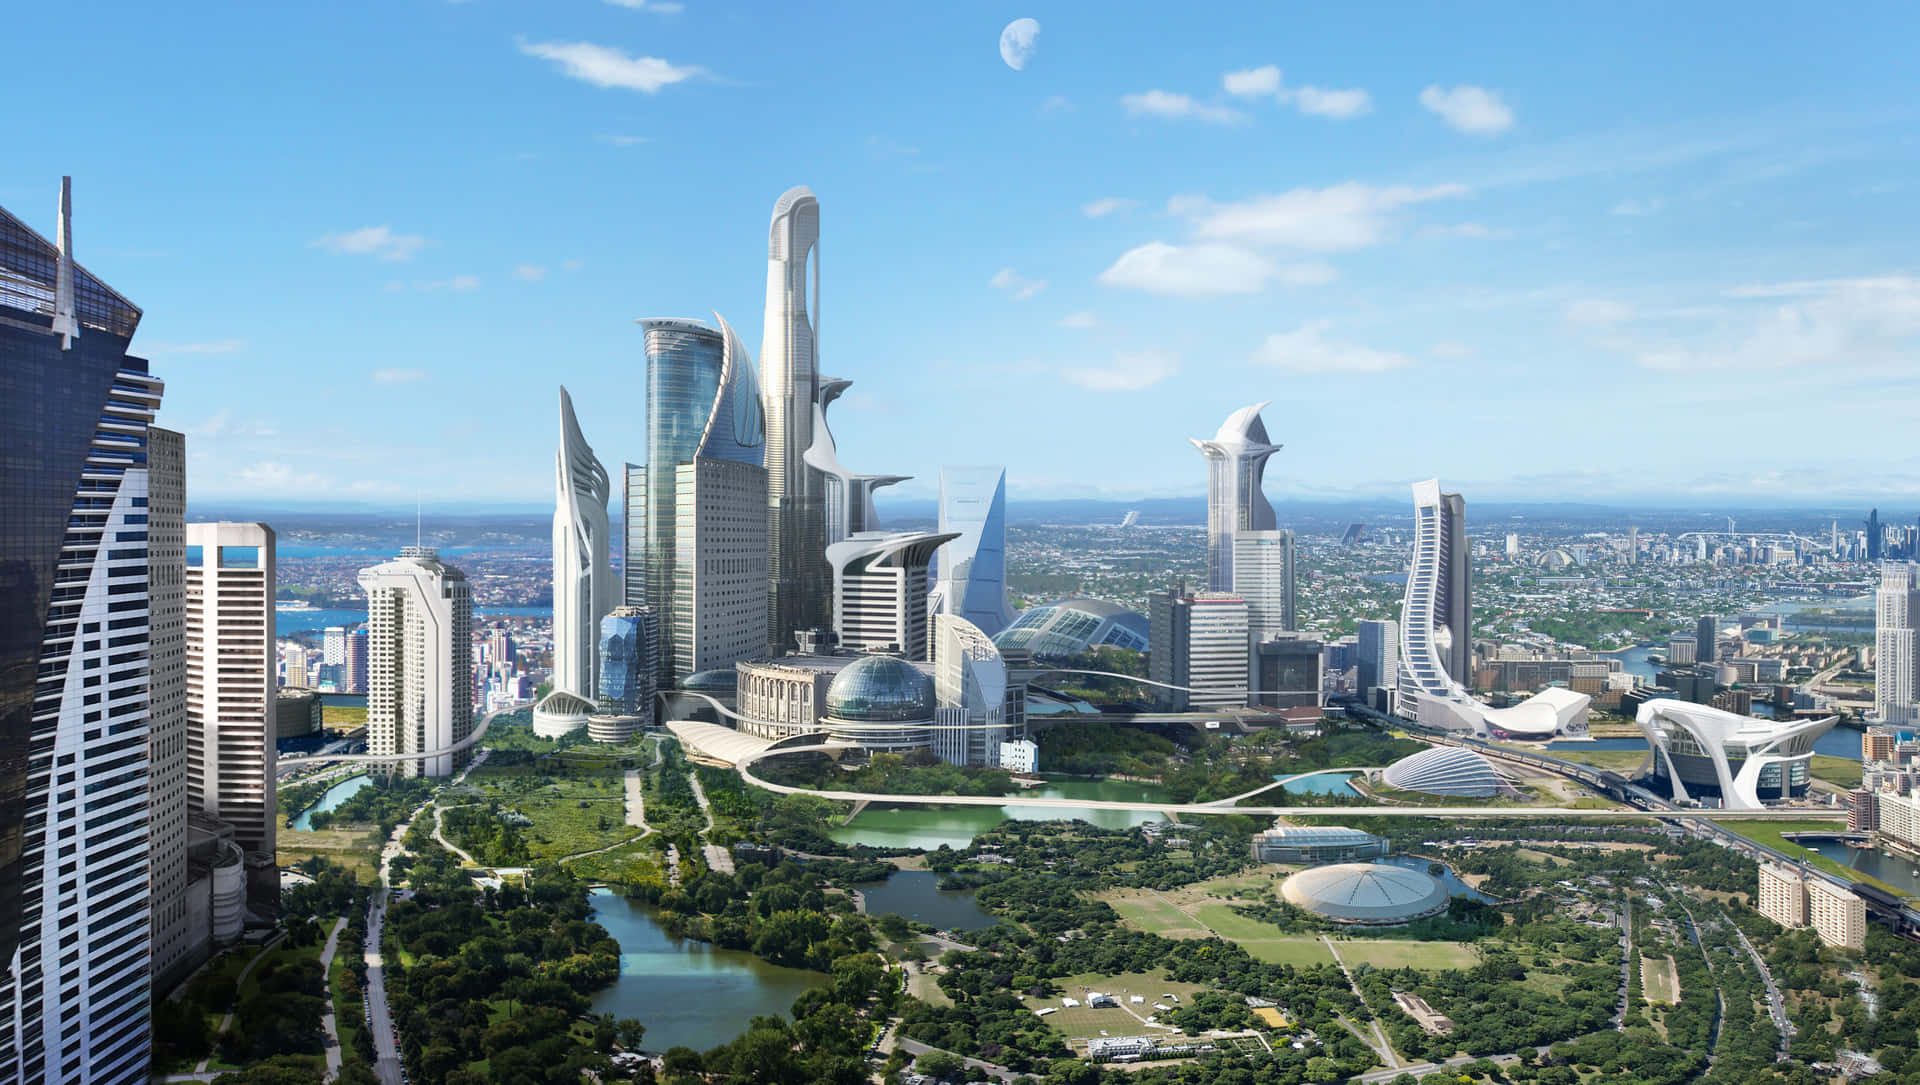 A Glimpse of the Futuristic City Wallpaper